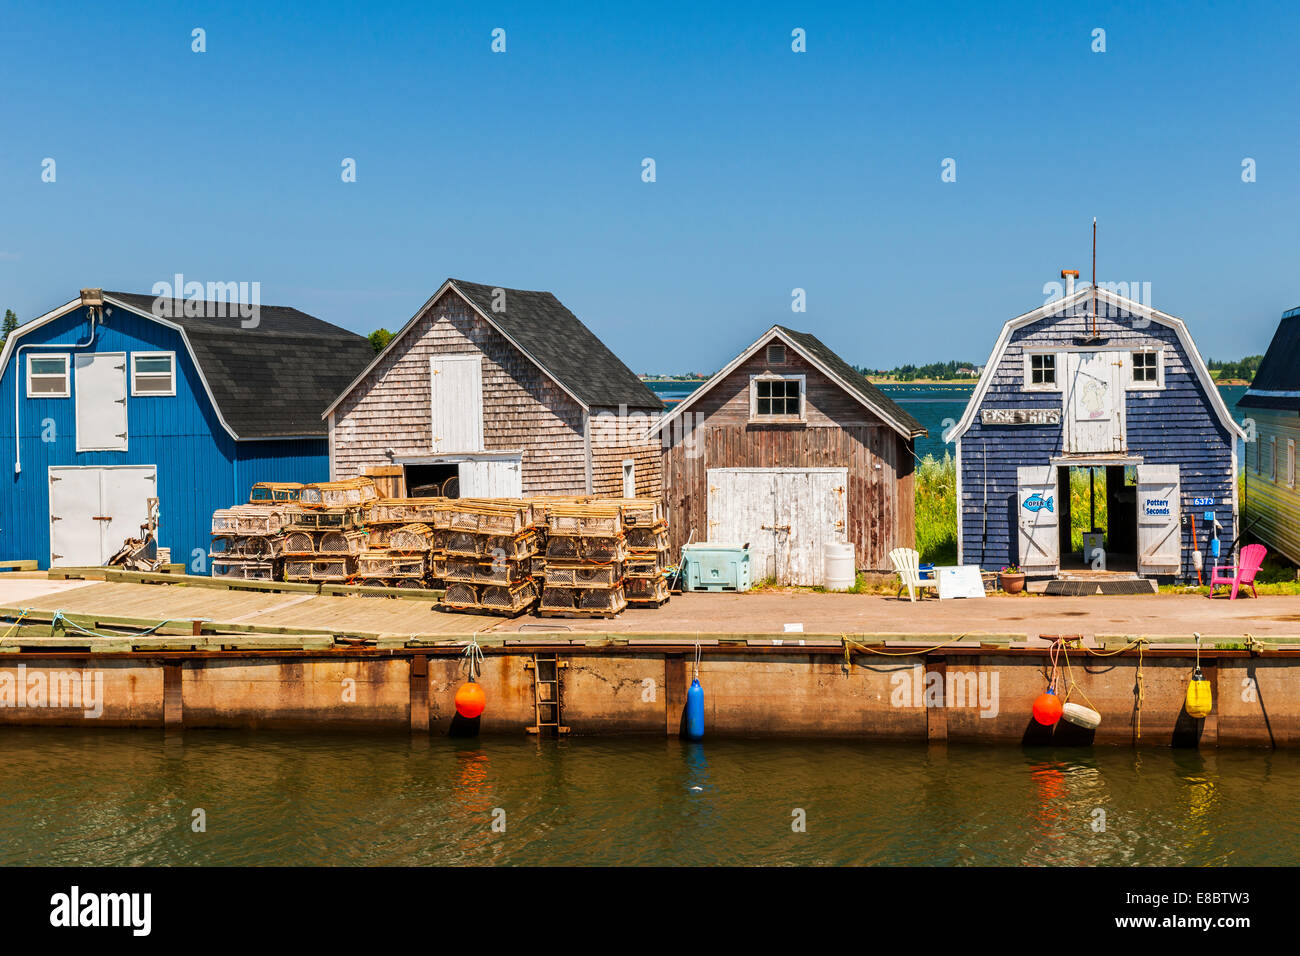 CAVENDISH, Ile du Prince-Édouard, Canada - le 15 juillet 2013 : Pêche dock avec les bâtiments et les casiers à homards affiché le 15 juillet 2013 Banque D'Images